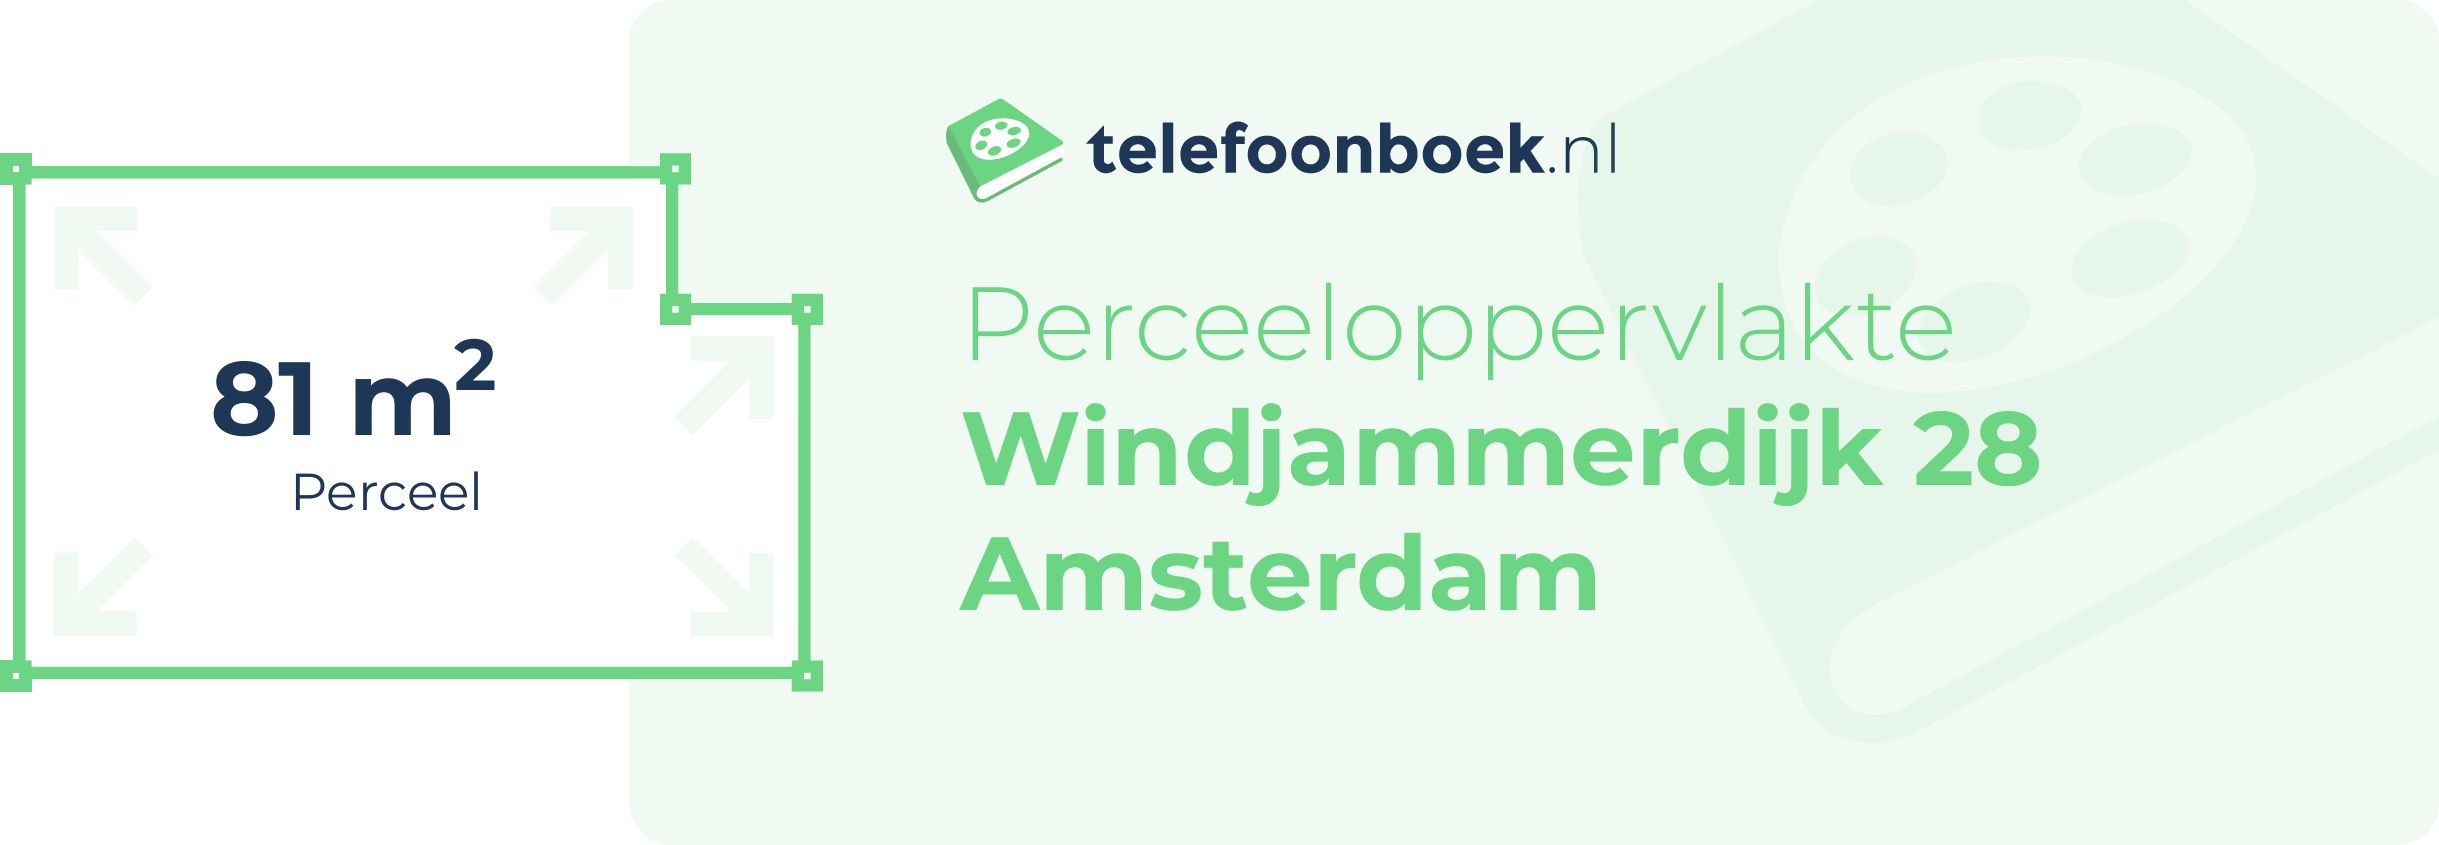 Perceeloppervlakte Windjammerdijk 28 Amsterdam